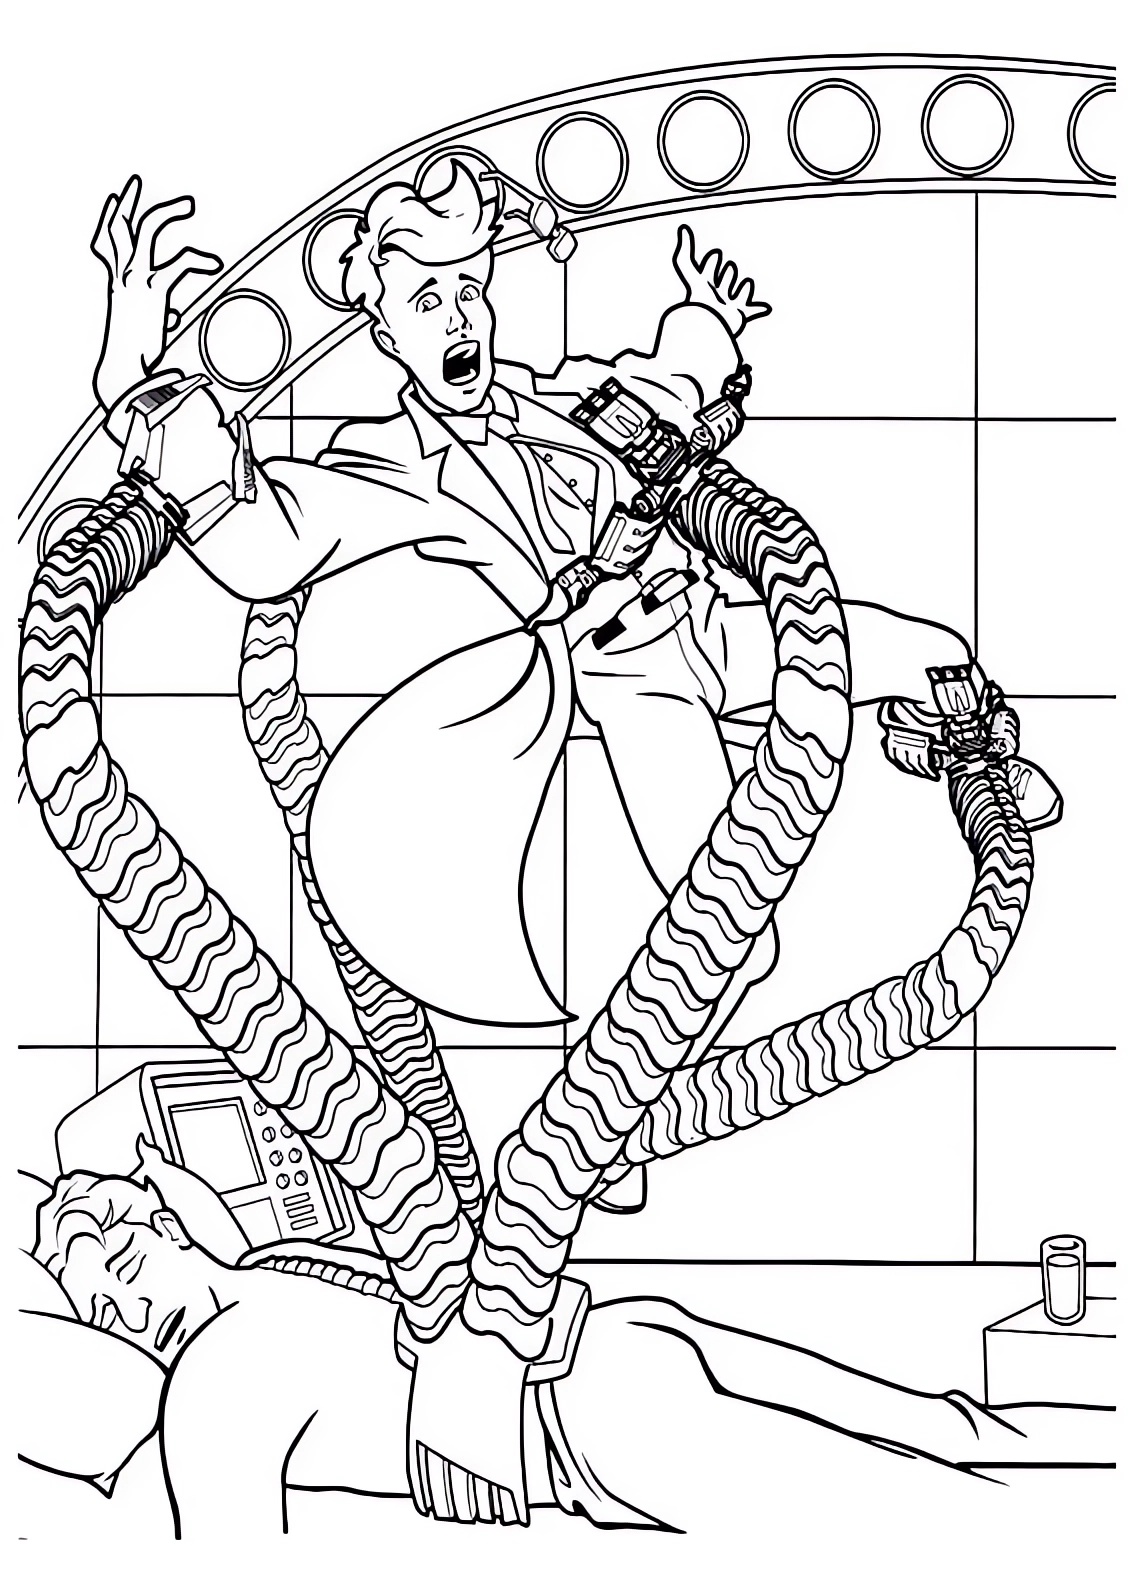 Disegno del dottor Octopus in azione con i suoi tentacoli da stampare e colorare 